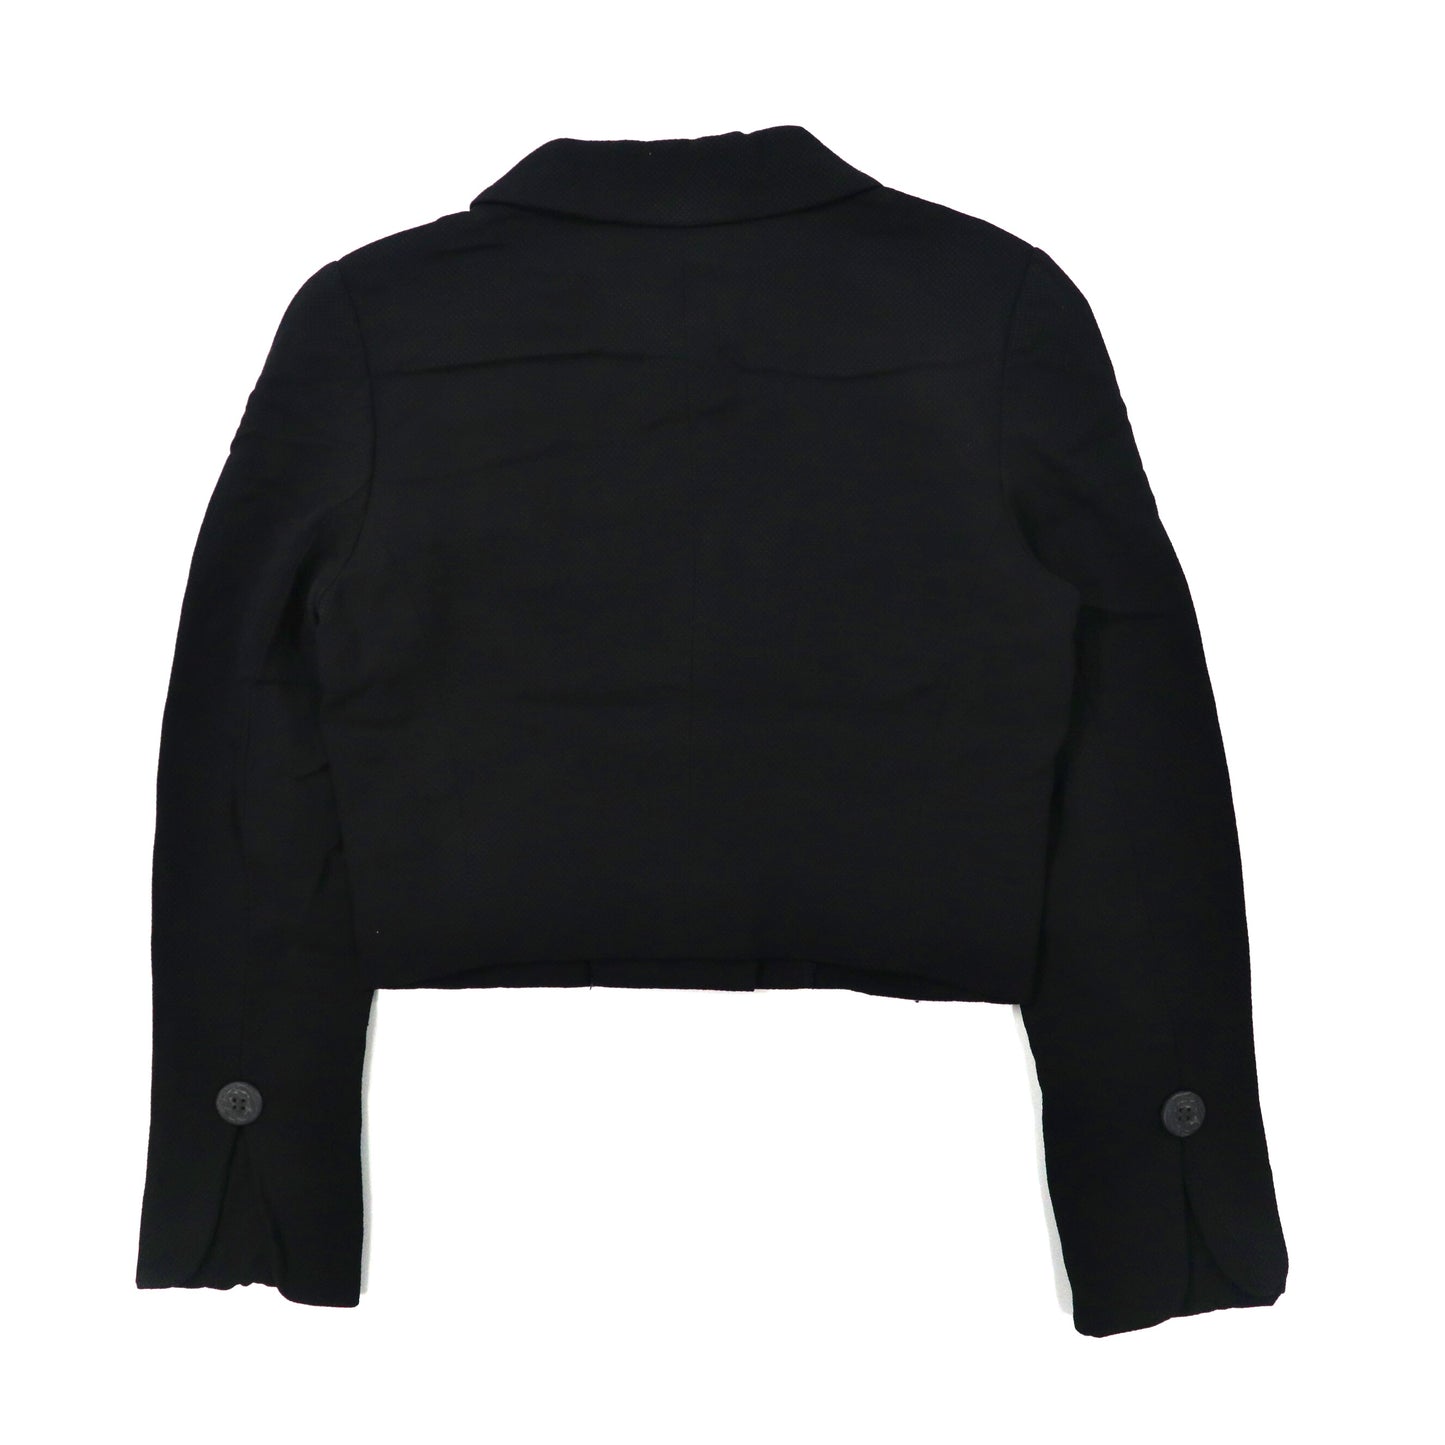 Christian Dior ボックスシルエット デザインジャケット S ブラック レーヨン Mademoiselle 70年代